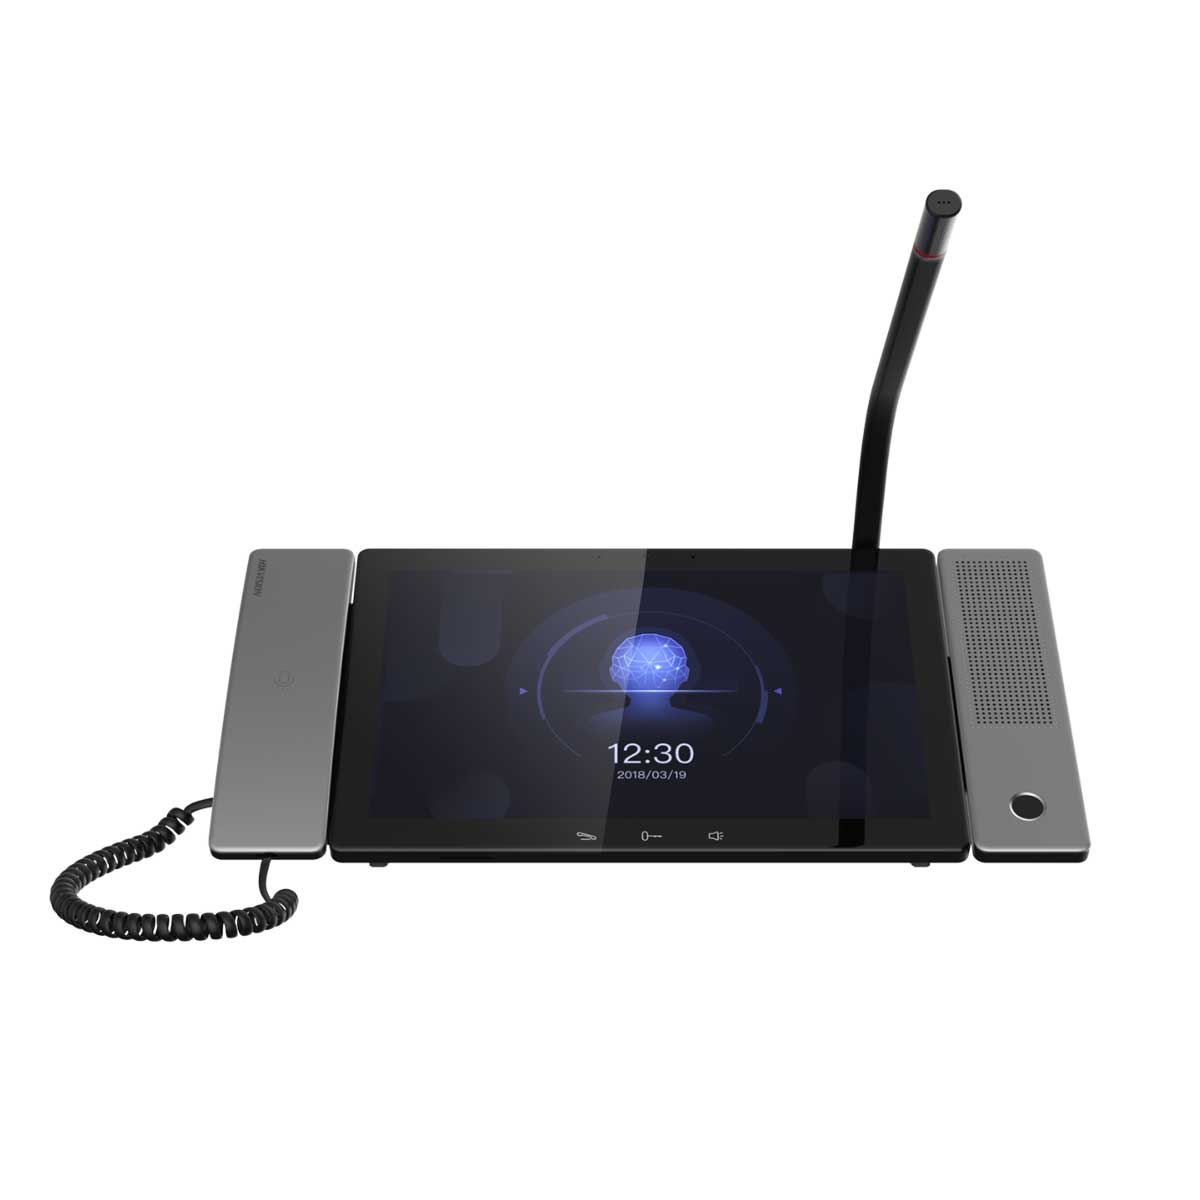 Trạm giám sát trung tâm Hikvision DS-KM9503 10.1 inch touch Android IP, camera 2MP, đàm thoại 2 chiều